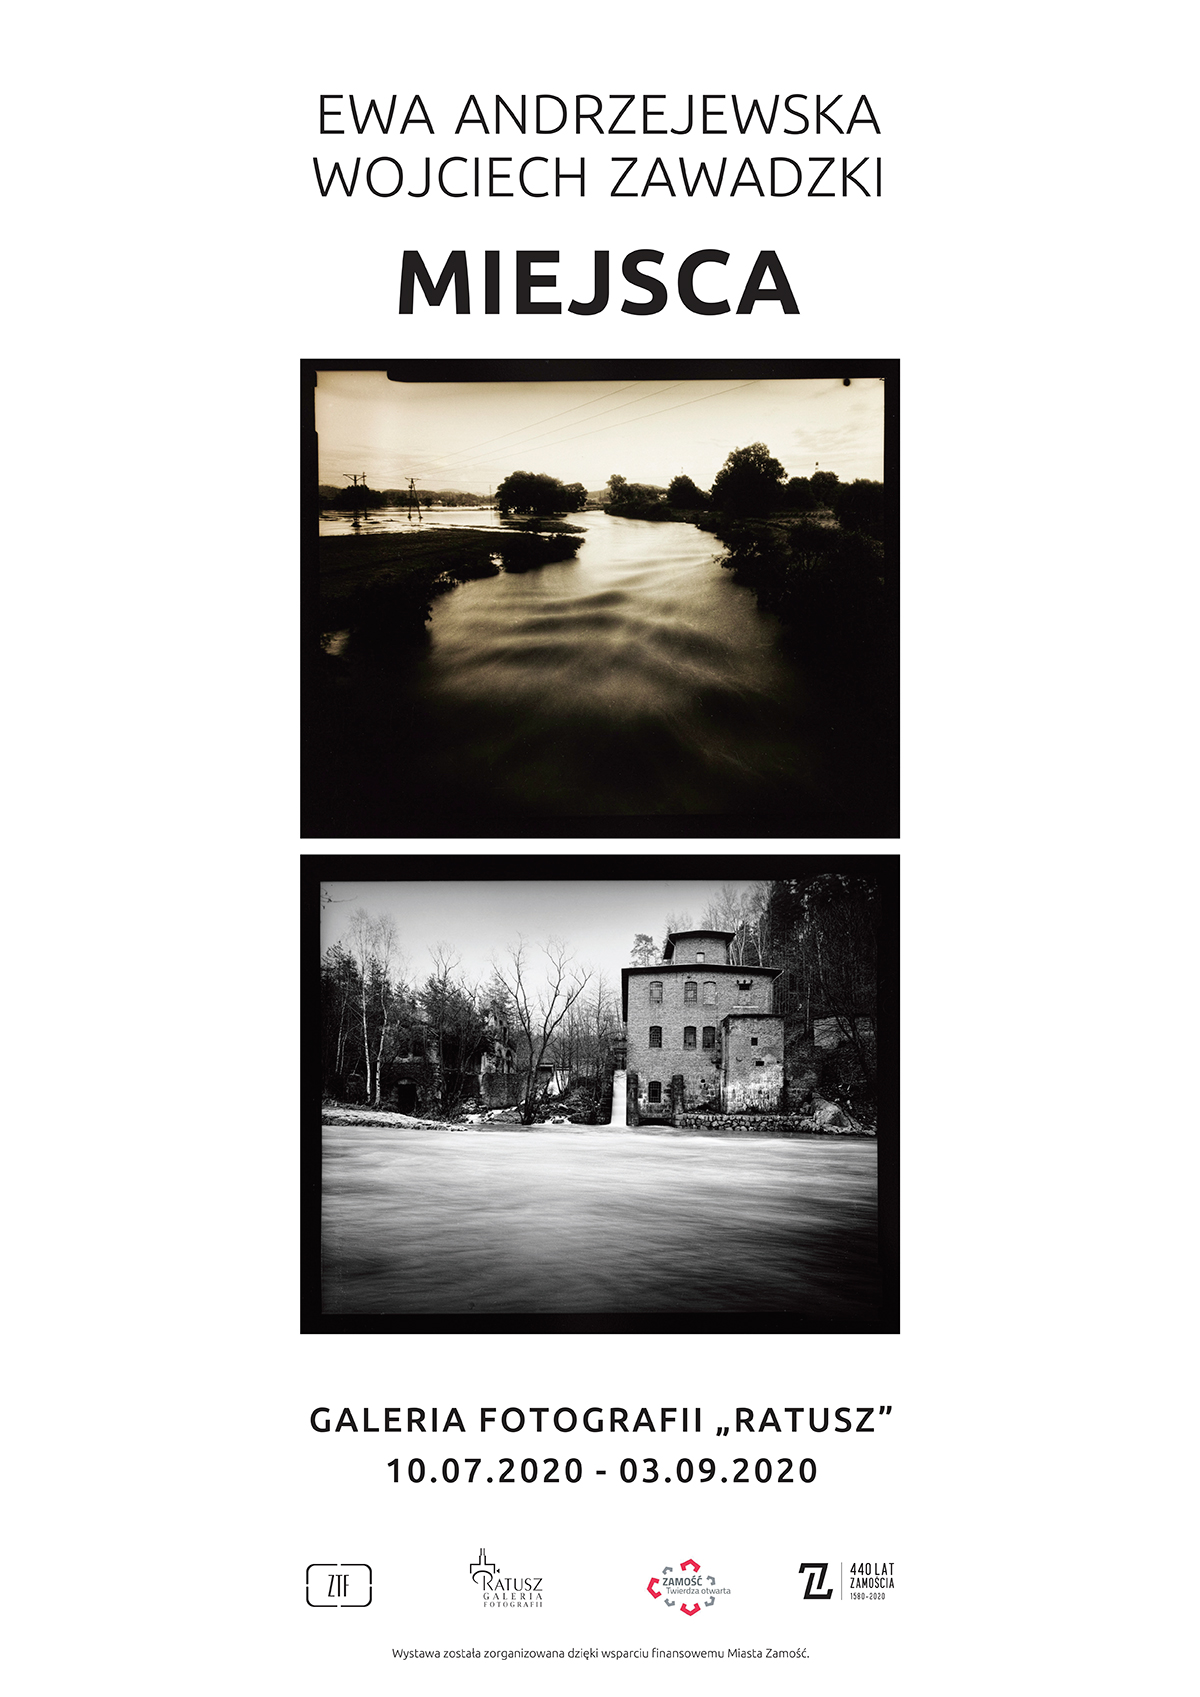 andrzejewska zawadzki plakat web "Miejsca" - wystawa fotografii Ewy Andrzejewskiej i Wojciecha Zawadzkiego